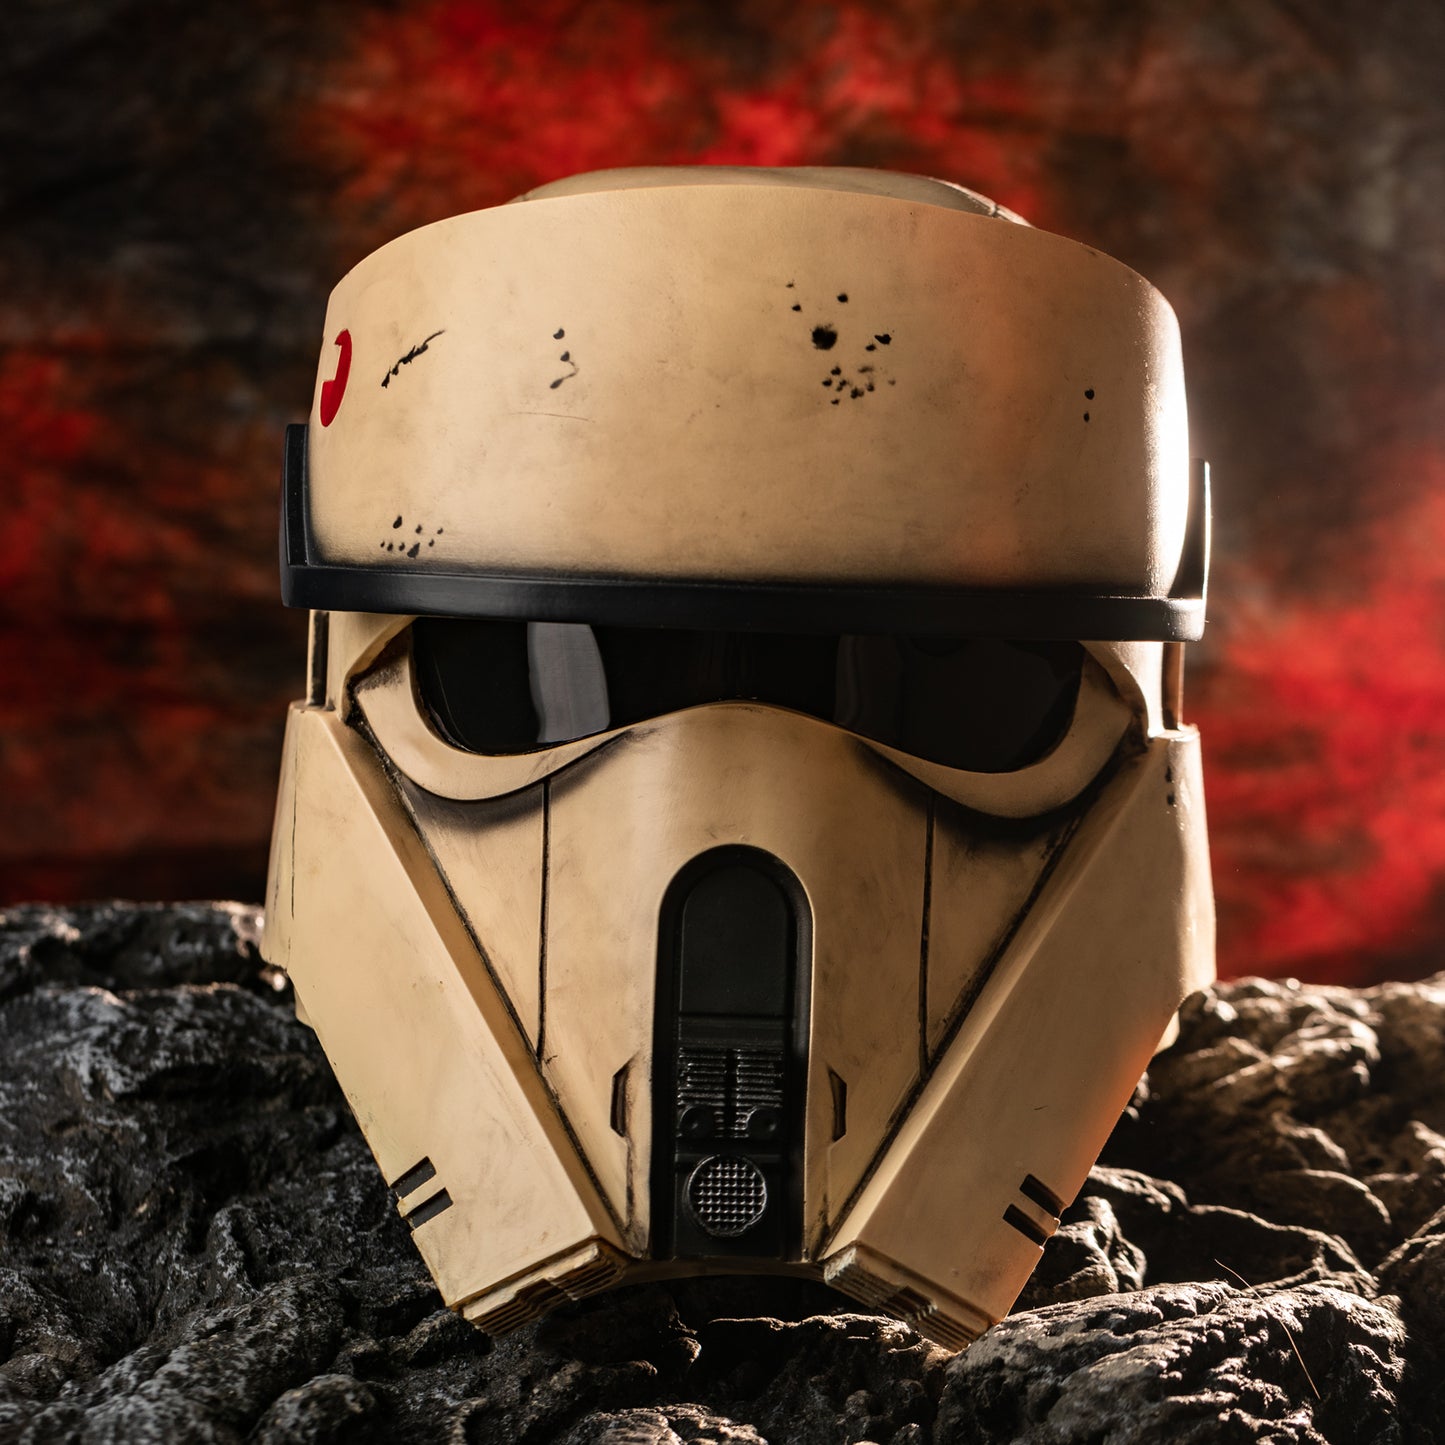 Xcoser 1:1 Star Wars Rogue One Shoretrooper Helm Cosplay Requisiten Harz Replik